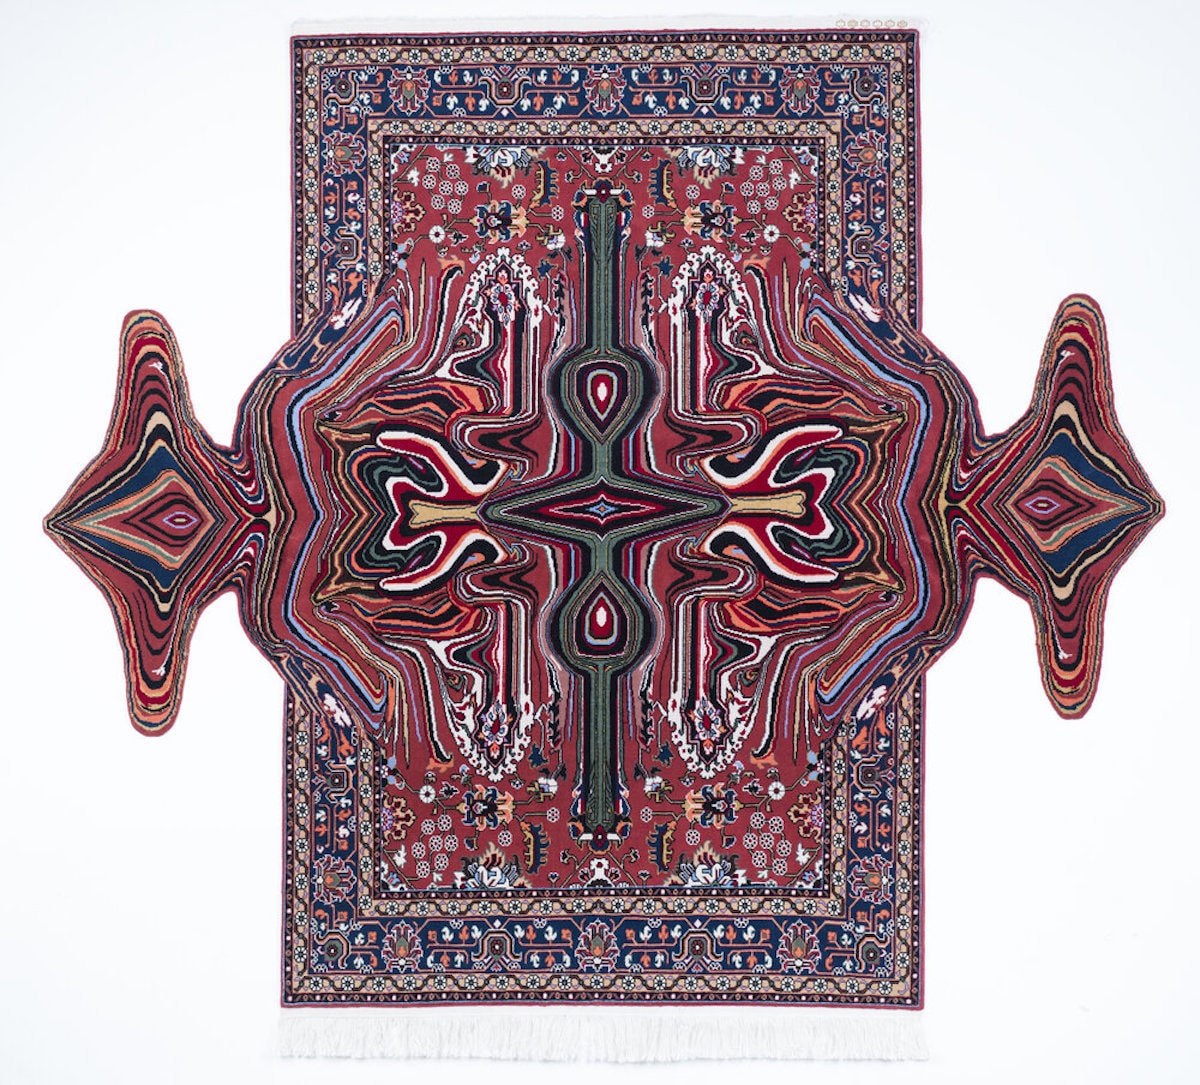 Carpets by Faig Ahmed